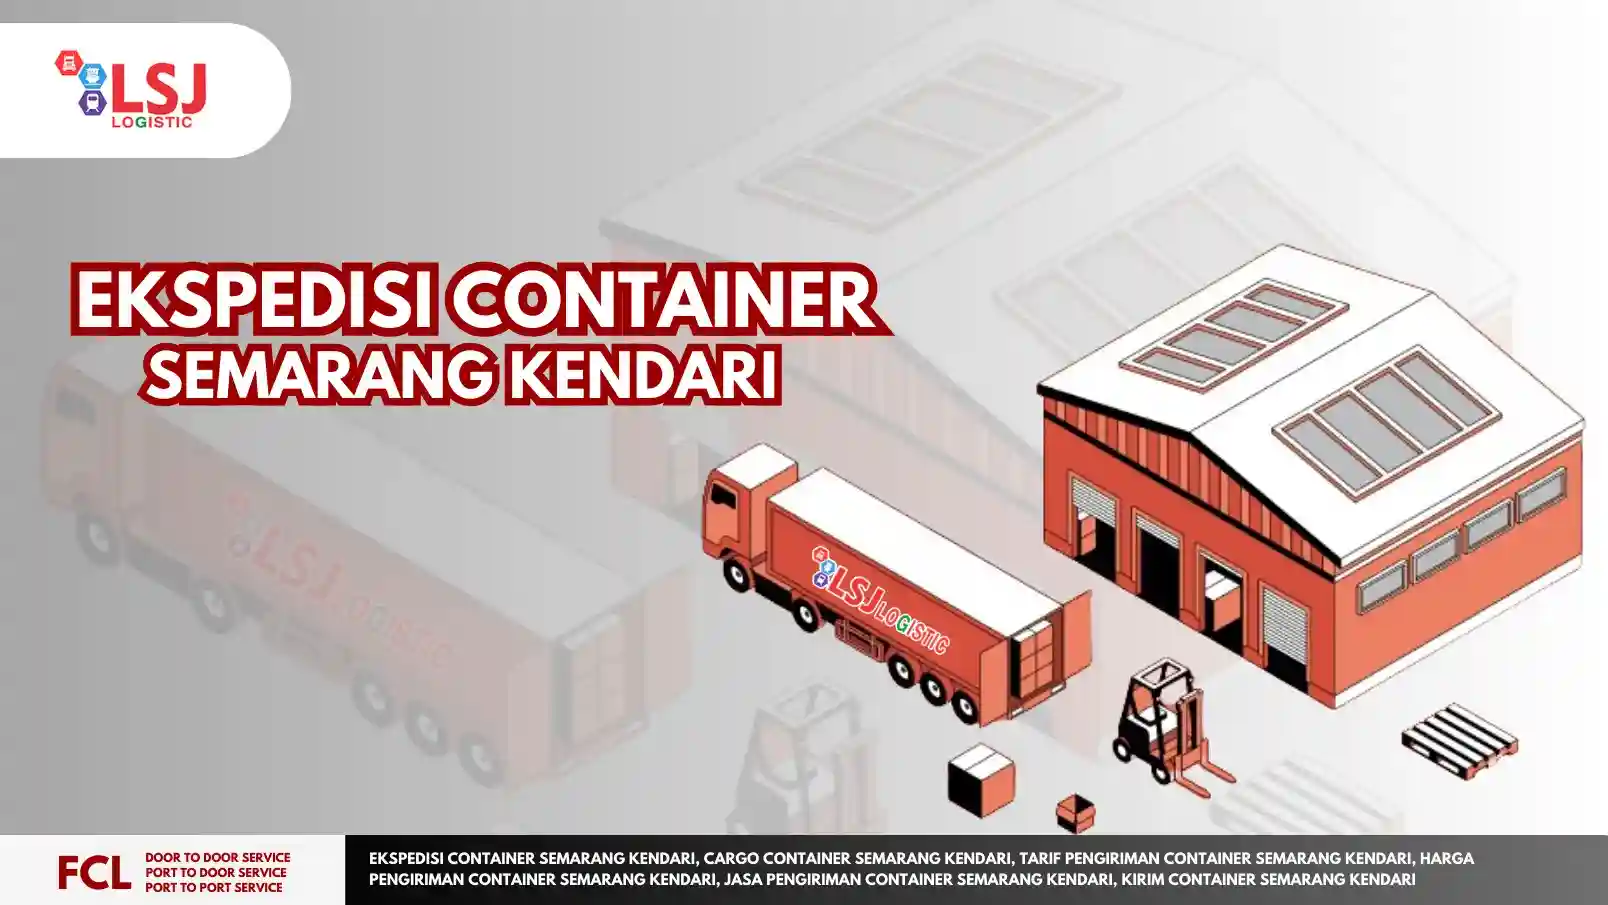 Ekspedisi Container Semarang Kendari